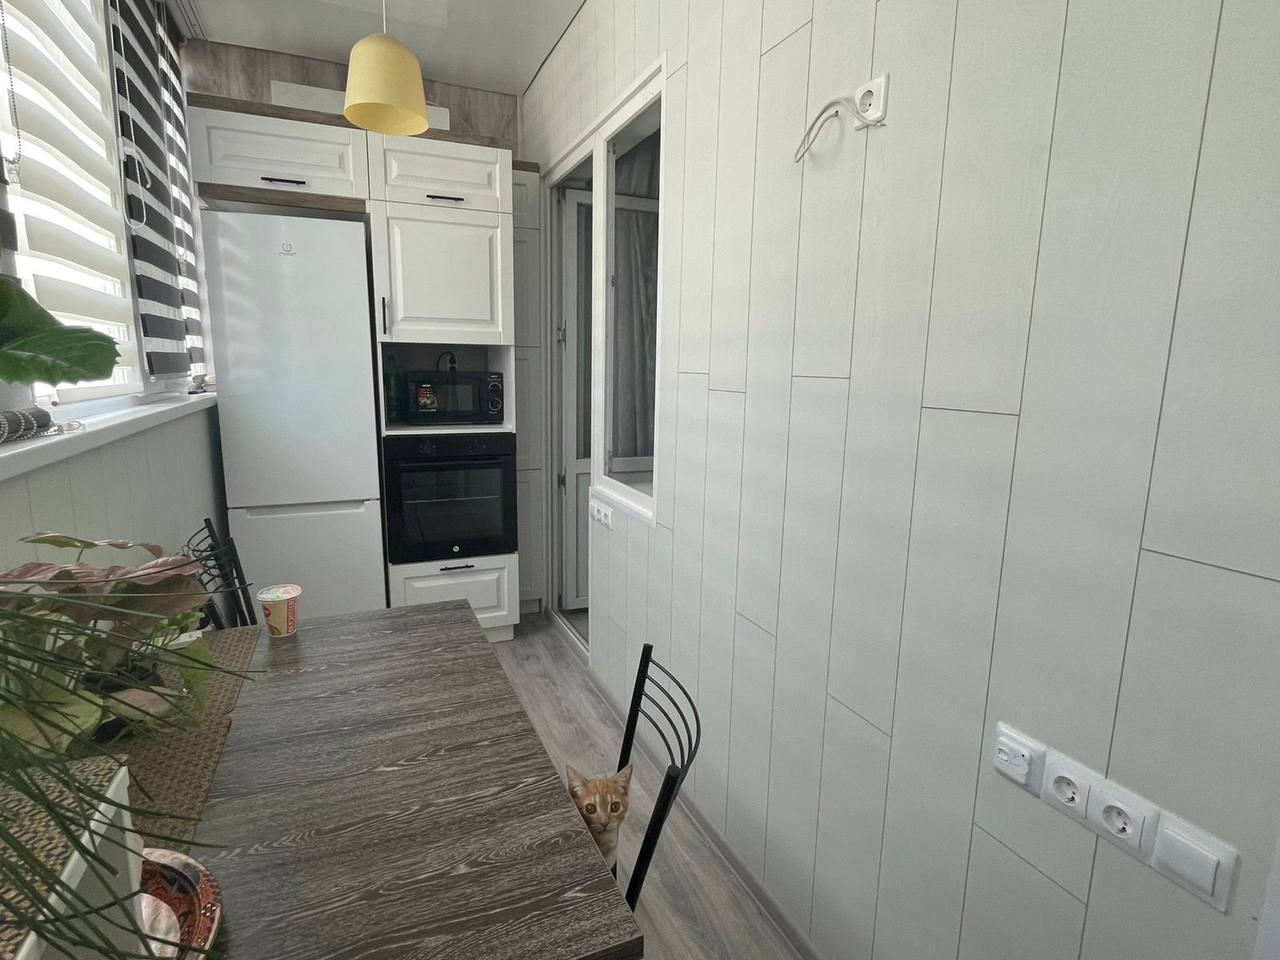 Теплый балкон под ключ под кухонную зону с изготовлением и монтажом кухни.